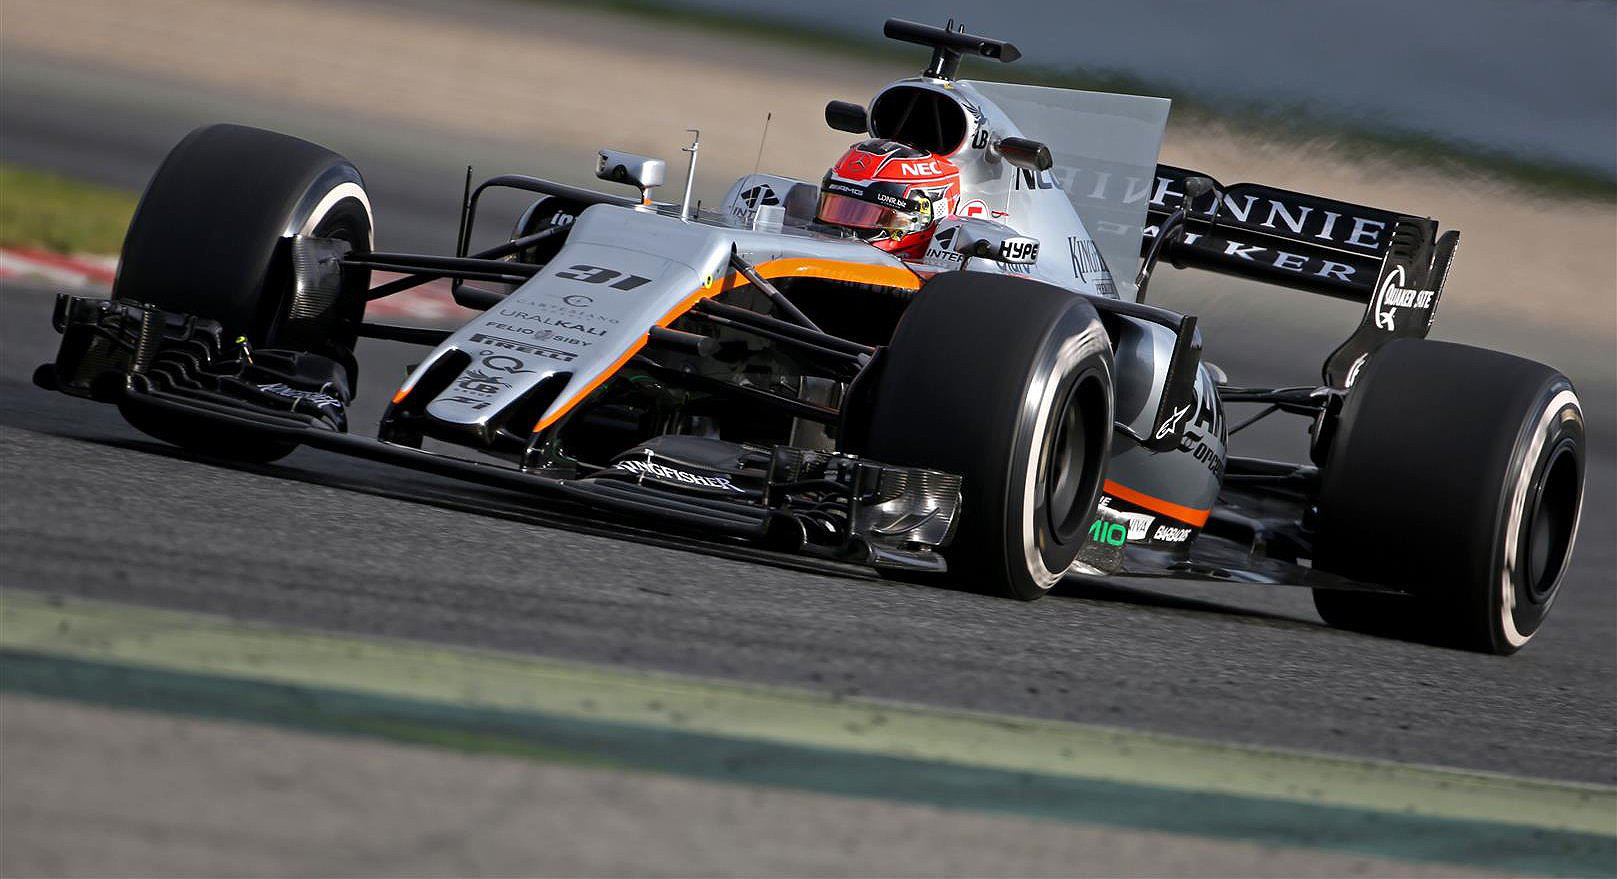 Esteban Ocon naznačil, že v něm Force India získala kvalitní posilu